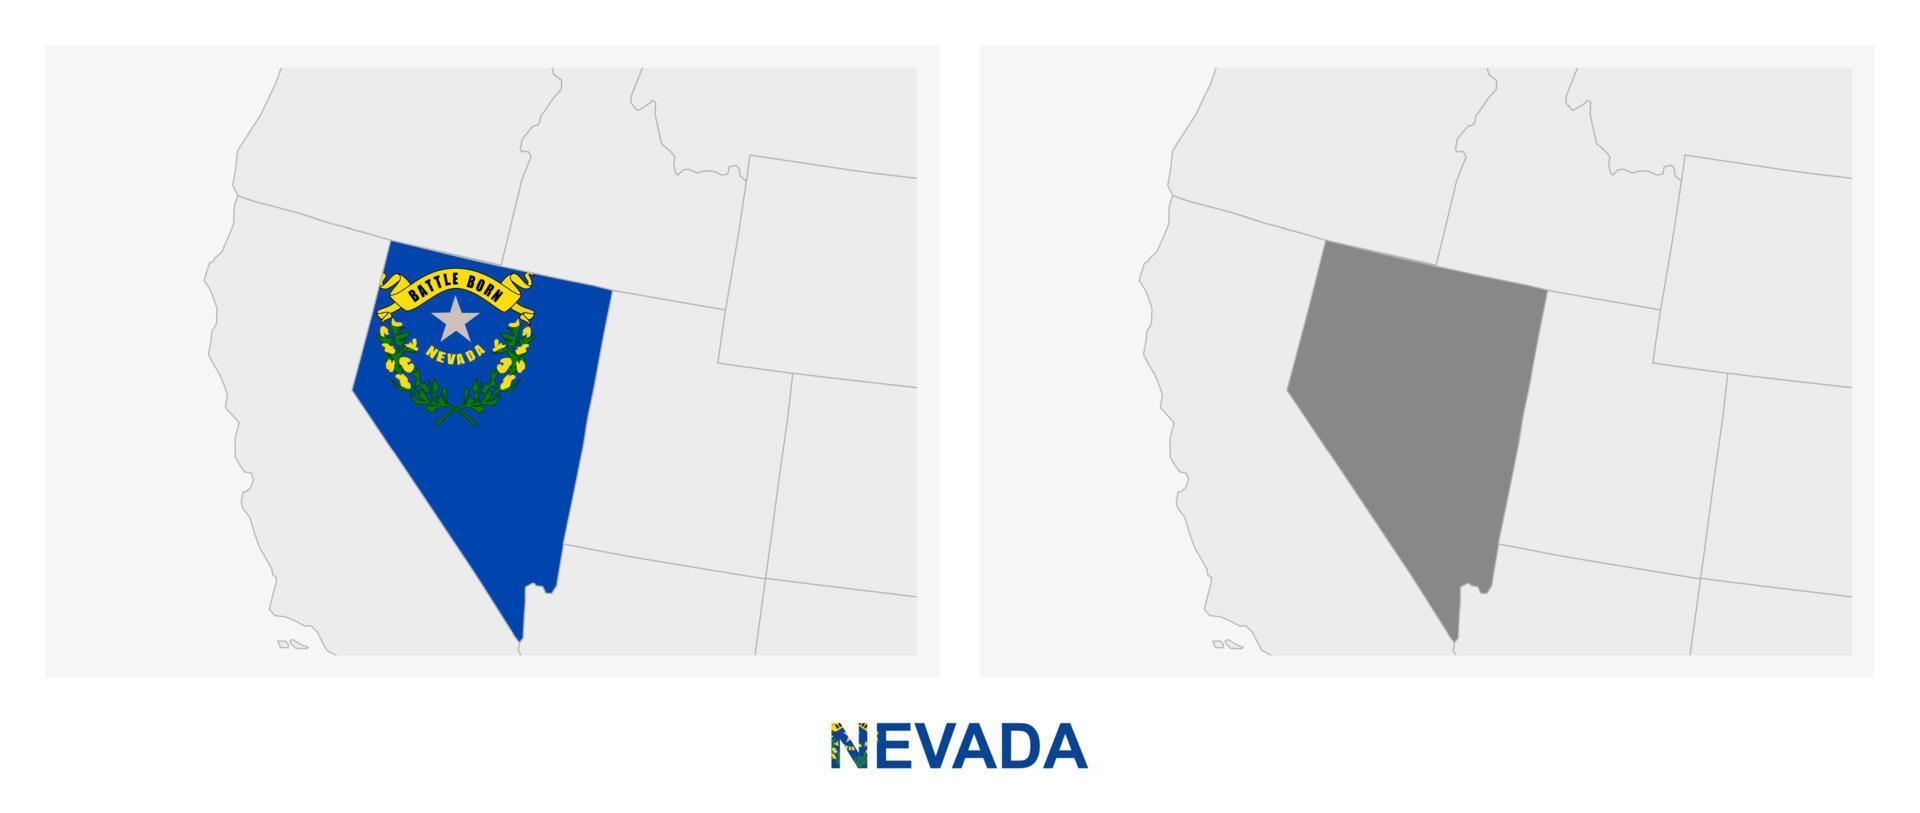 duas versões do mapa do estado americano de nevada, com a bandeira de nevada e destacada em cinza escuro. vetor